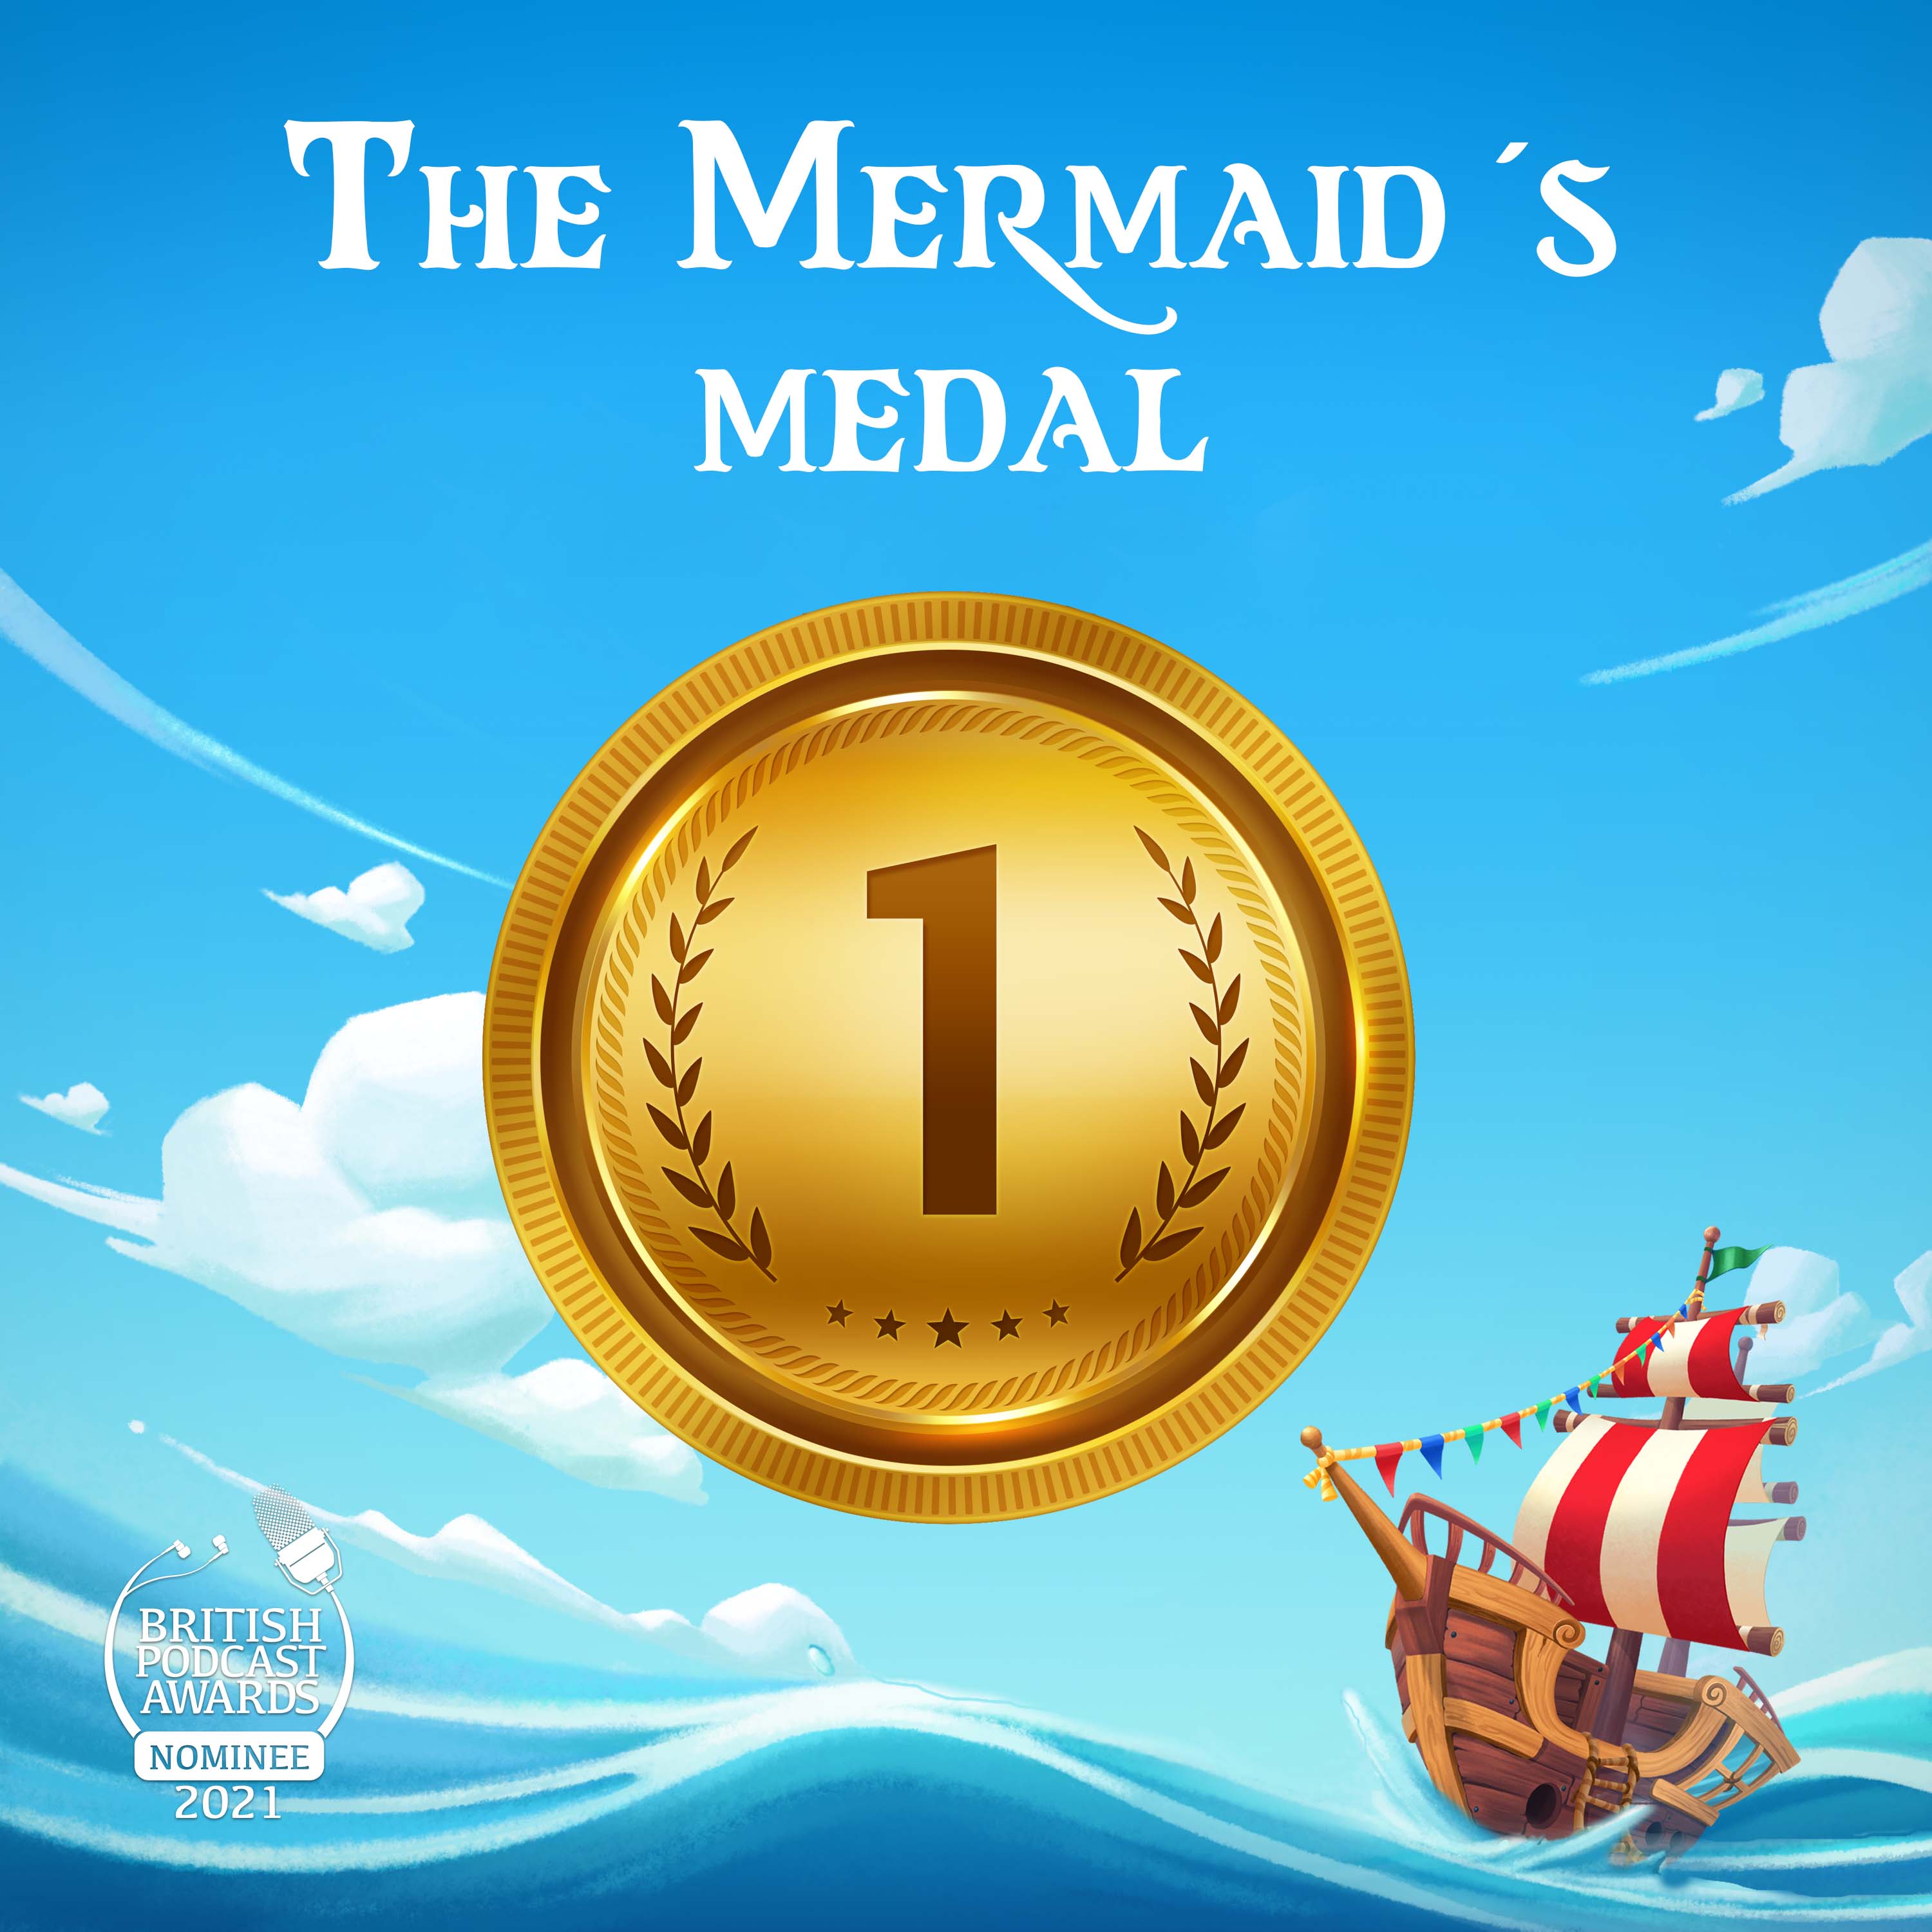 The Mermaid's Medal